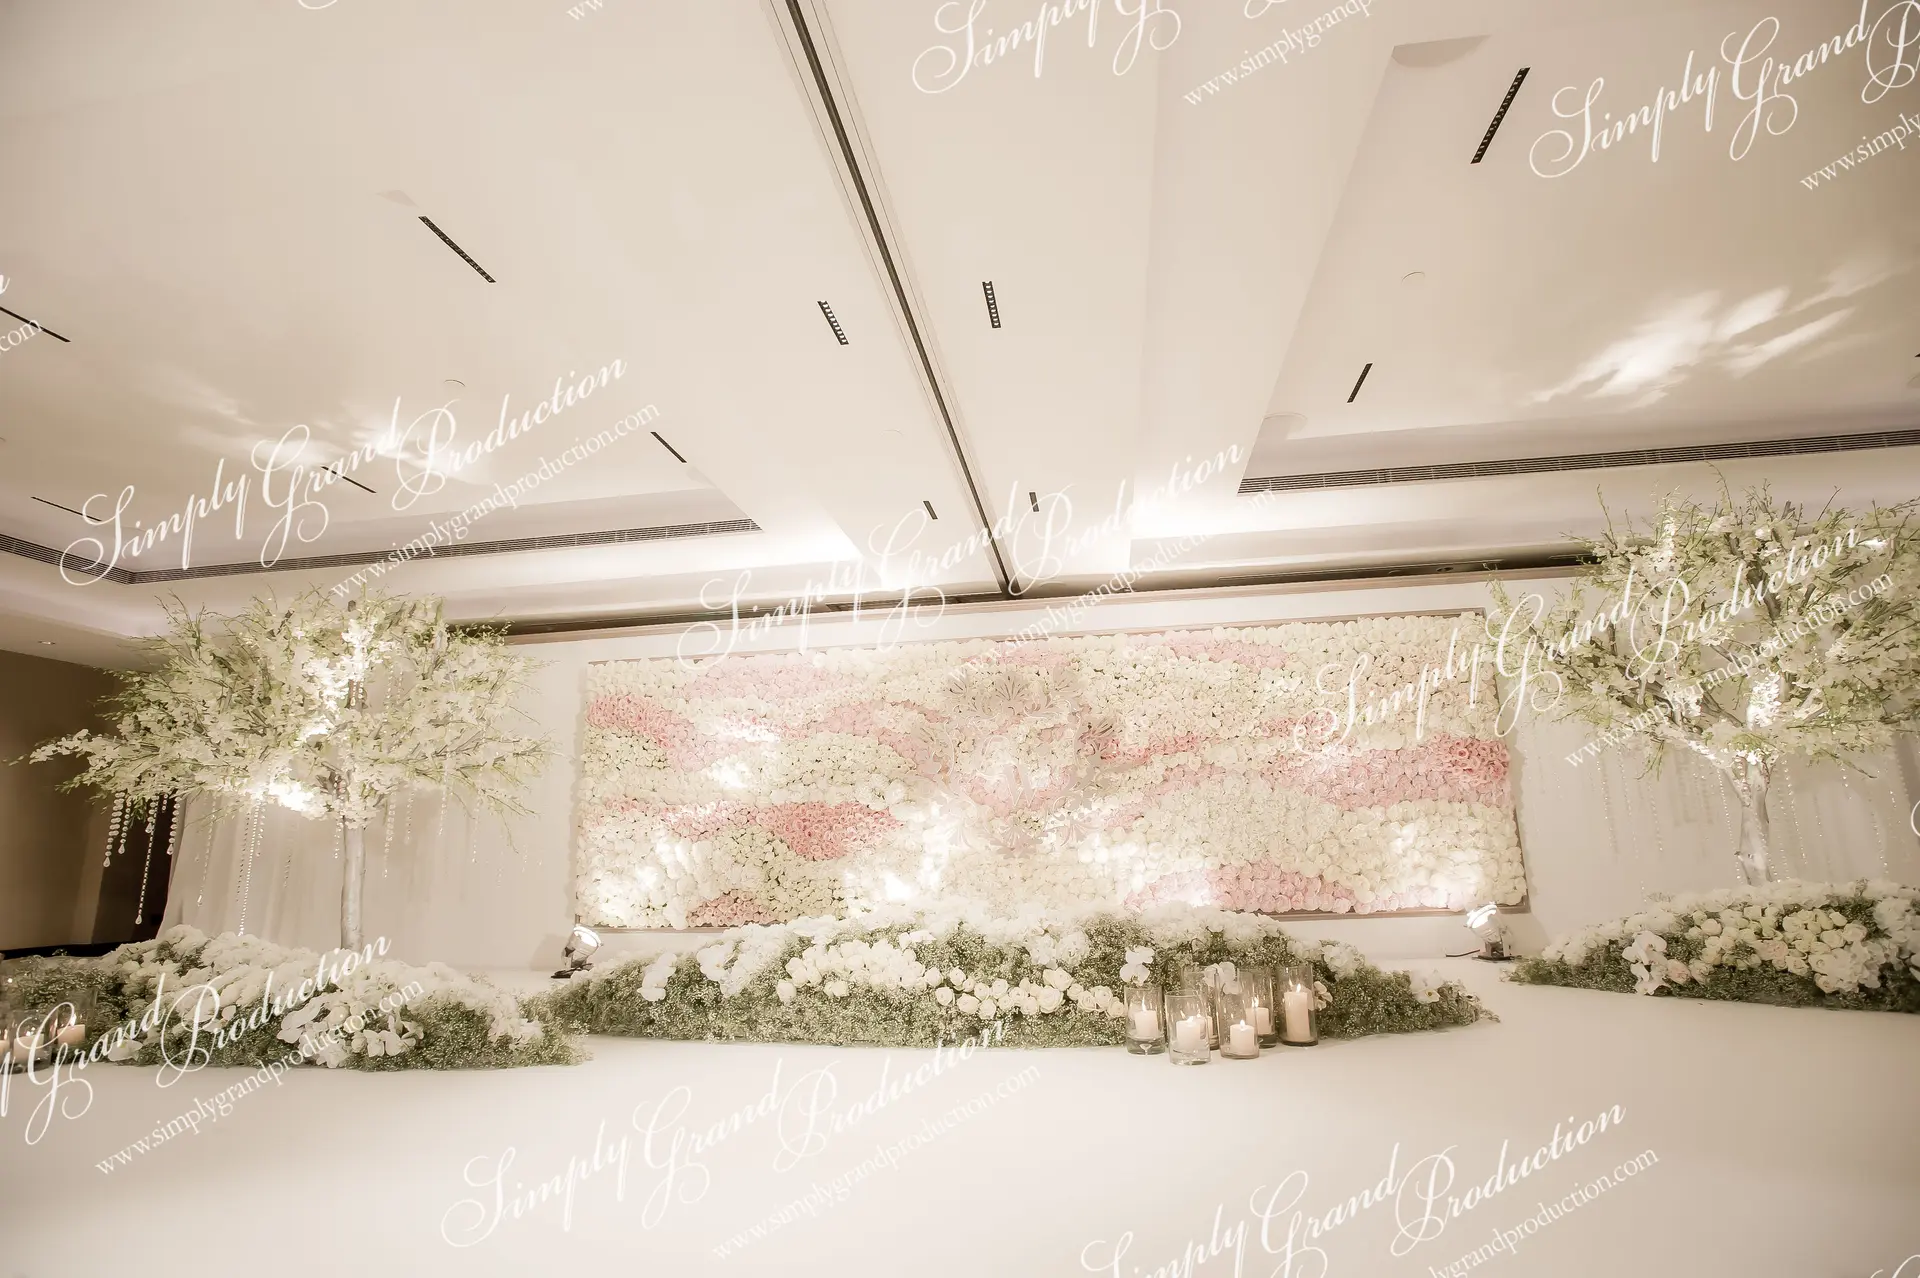 Simply_Grand_Production_wedding_deco_flower_wall_fresh_Grand_Hyatt_1_3_wm